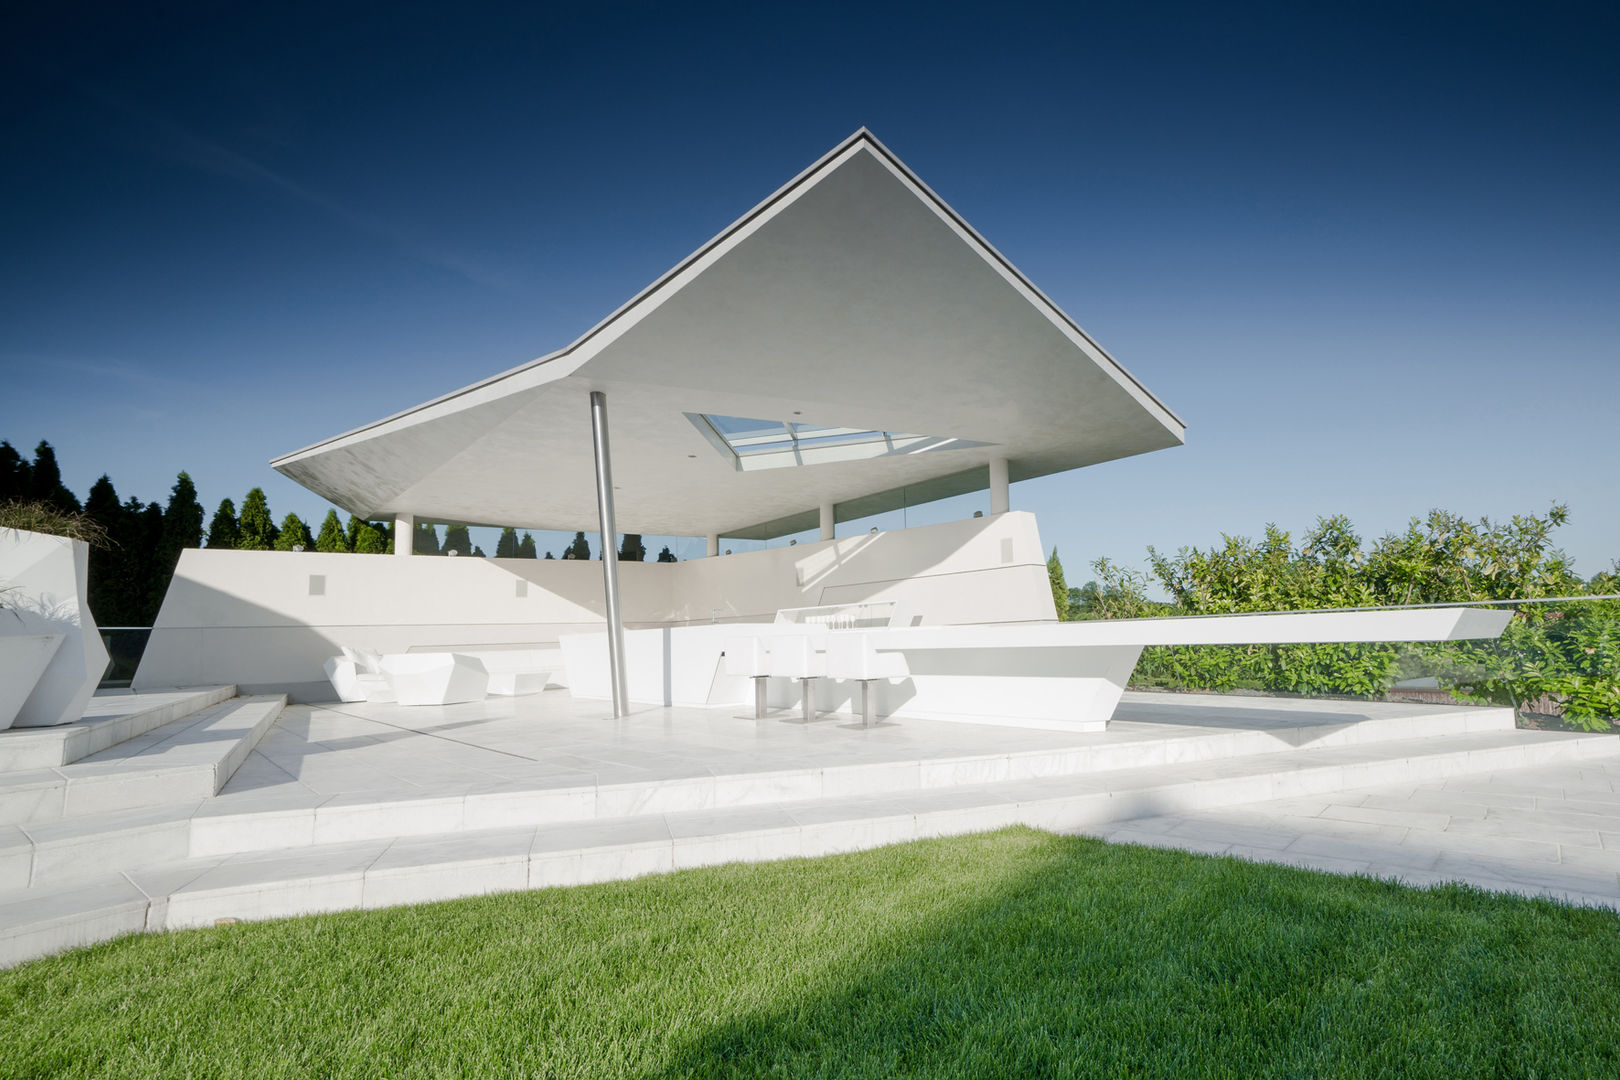 Filigranes Sonnensegel aus Stahlbeton, KARL+ZILLER Architektur KARL+ZILLER Architektur Moderne tuinen